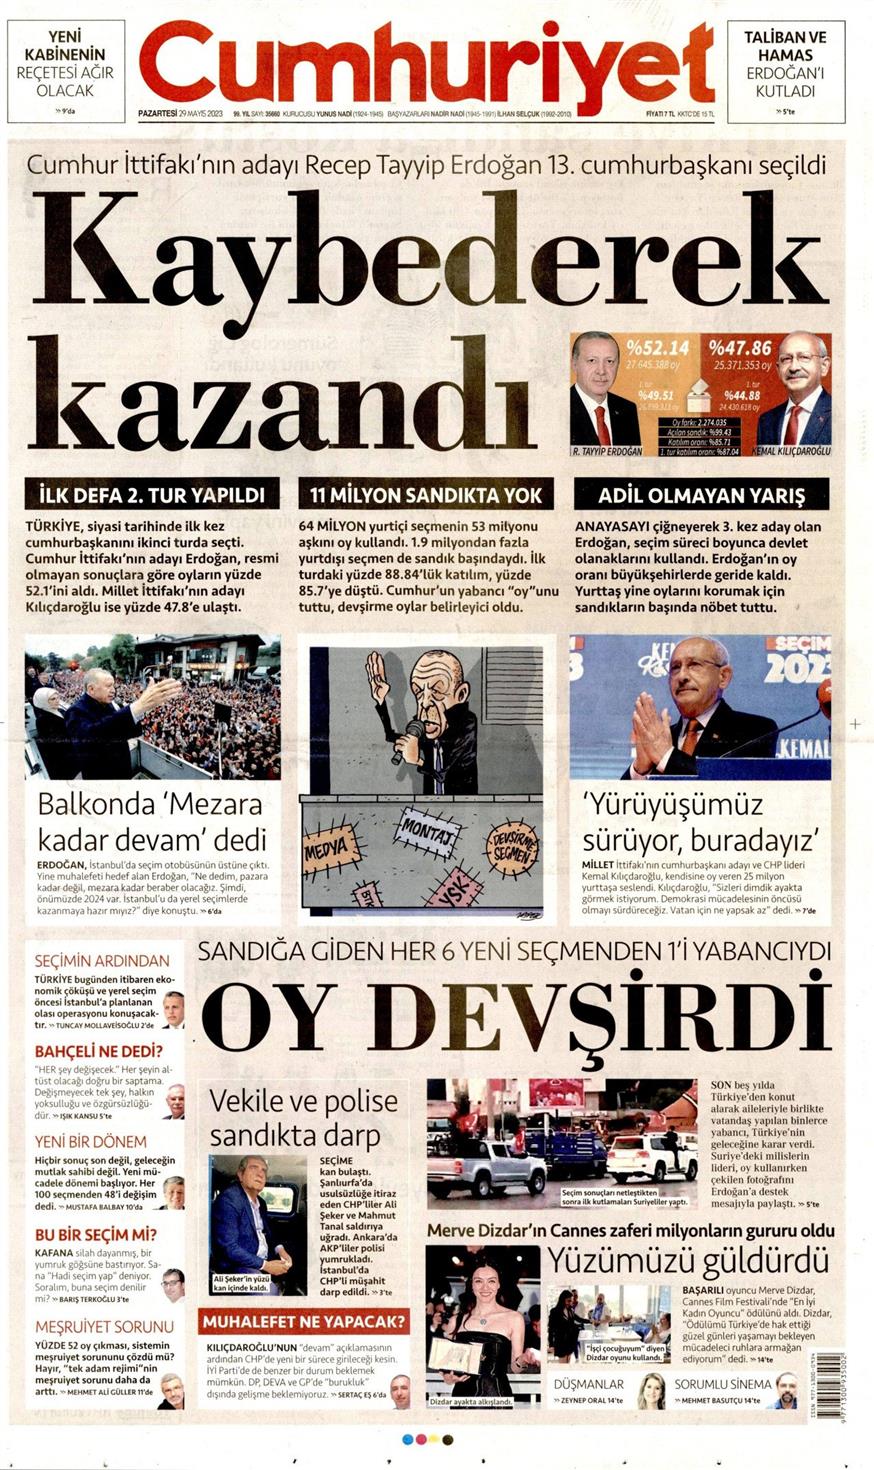 Πρωτοσέλιδα των τουρκικών εφημερίδων για τη νίκη του Ερντογάν